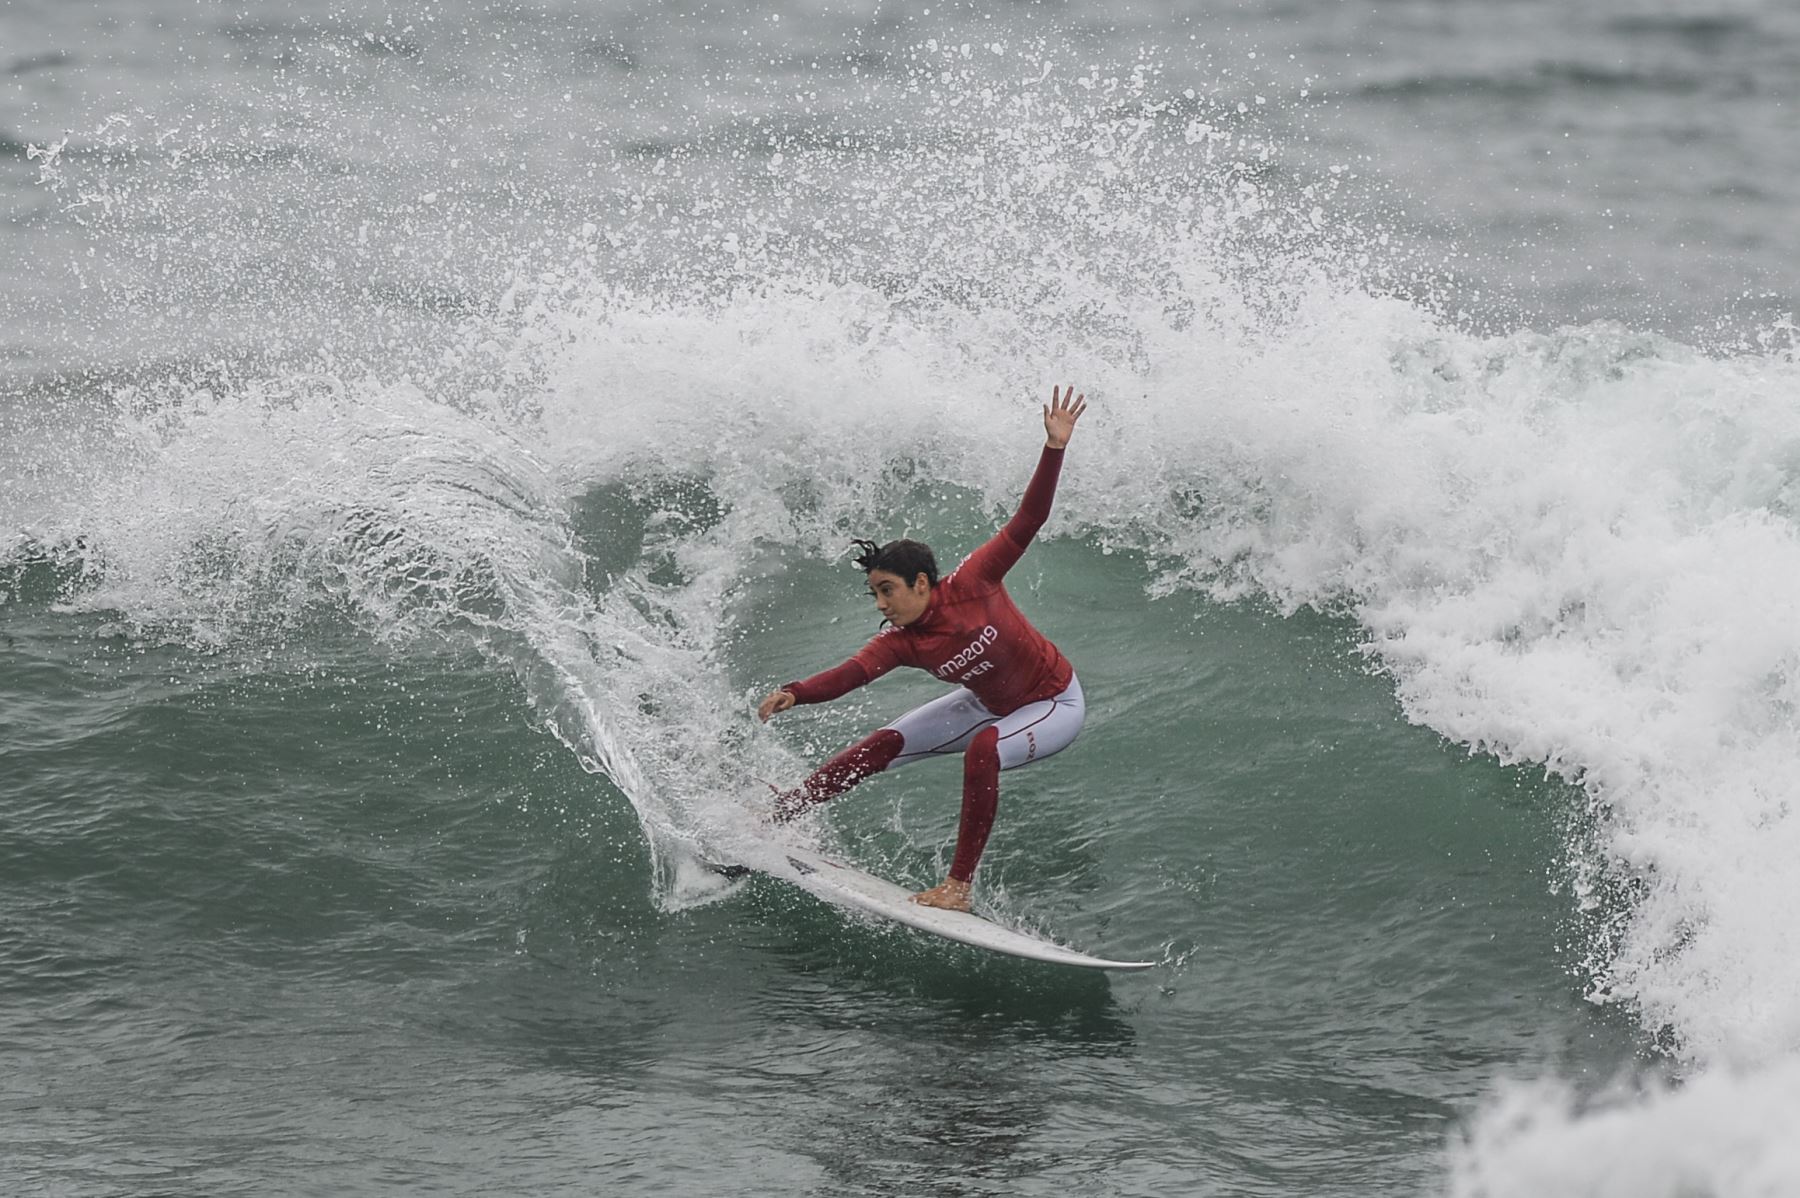 La peruana Daniella Rosas compite en la competencia femenina Open Surfing durante los Juegos Panamericanos Lima 2019 en la playa de Punta Rocas. AFP